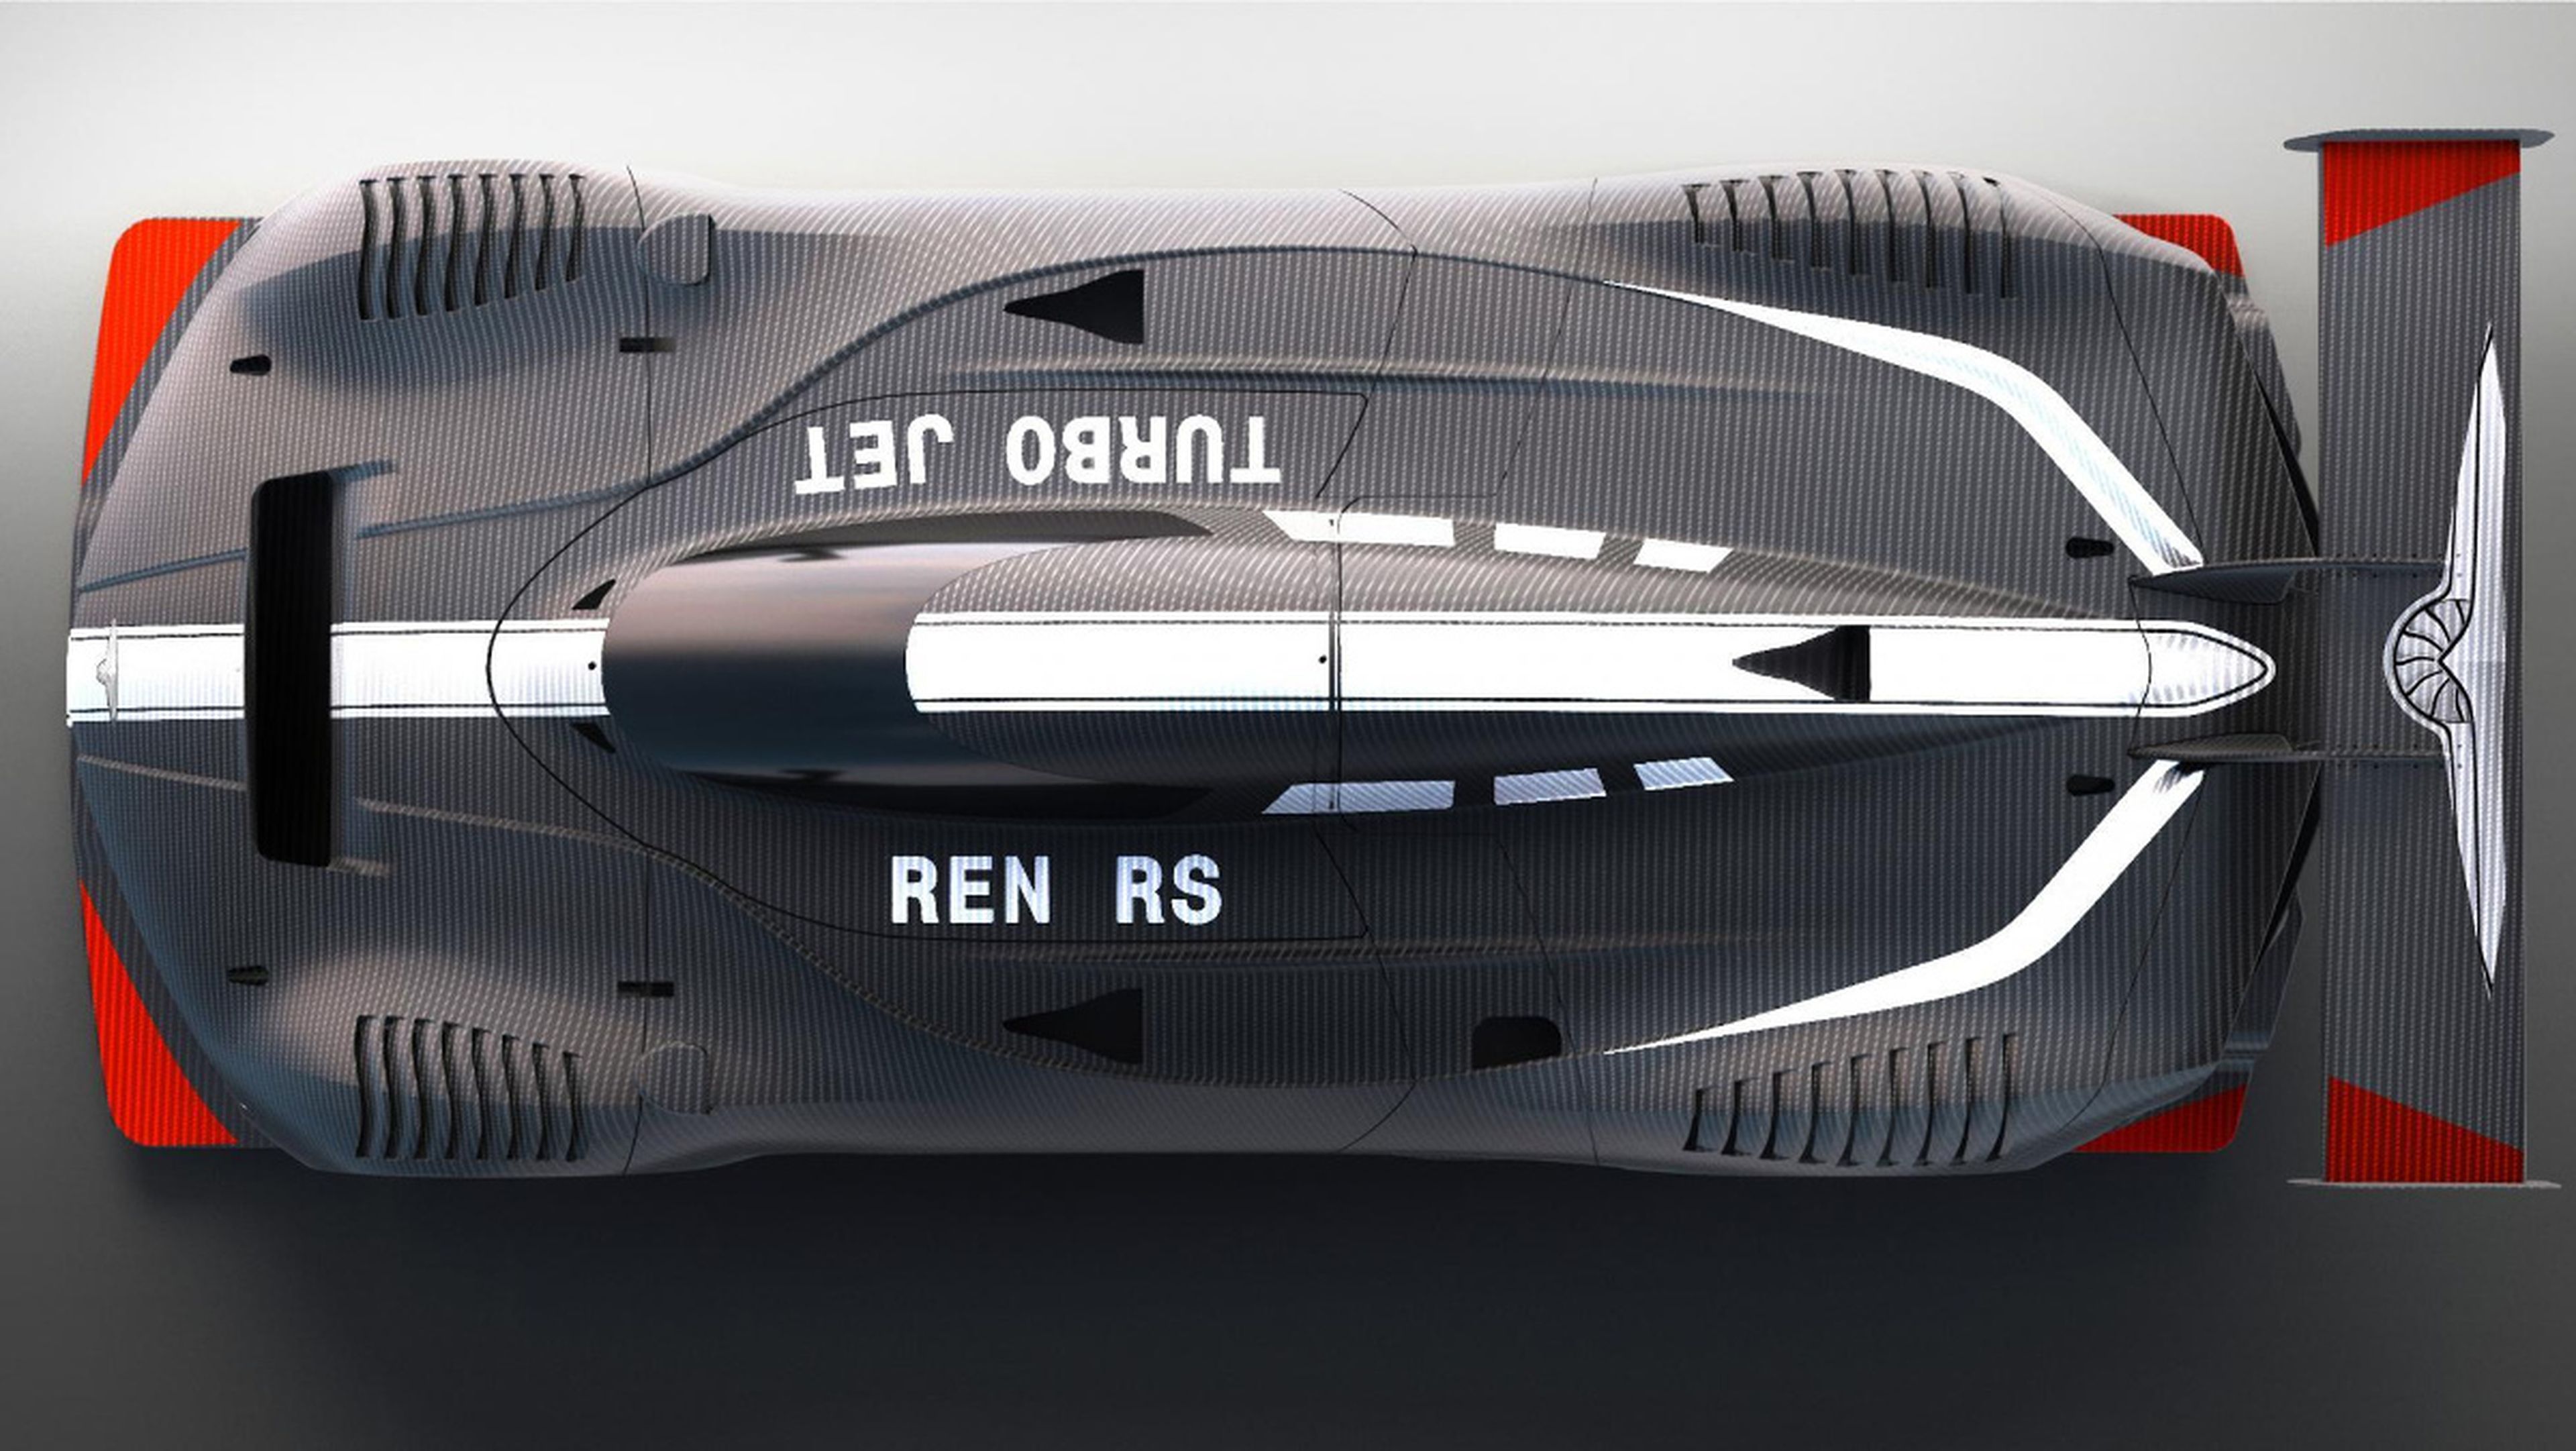 Vista cenital del Ren RS